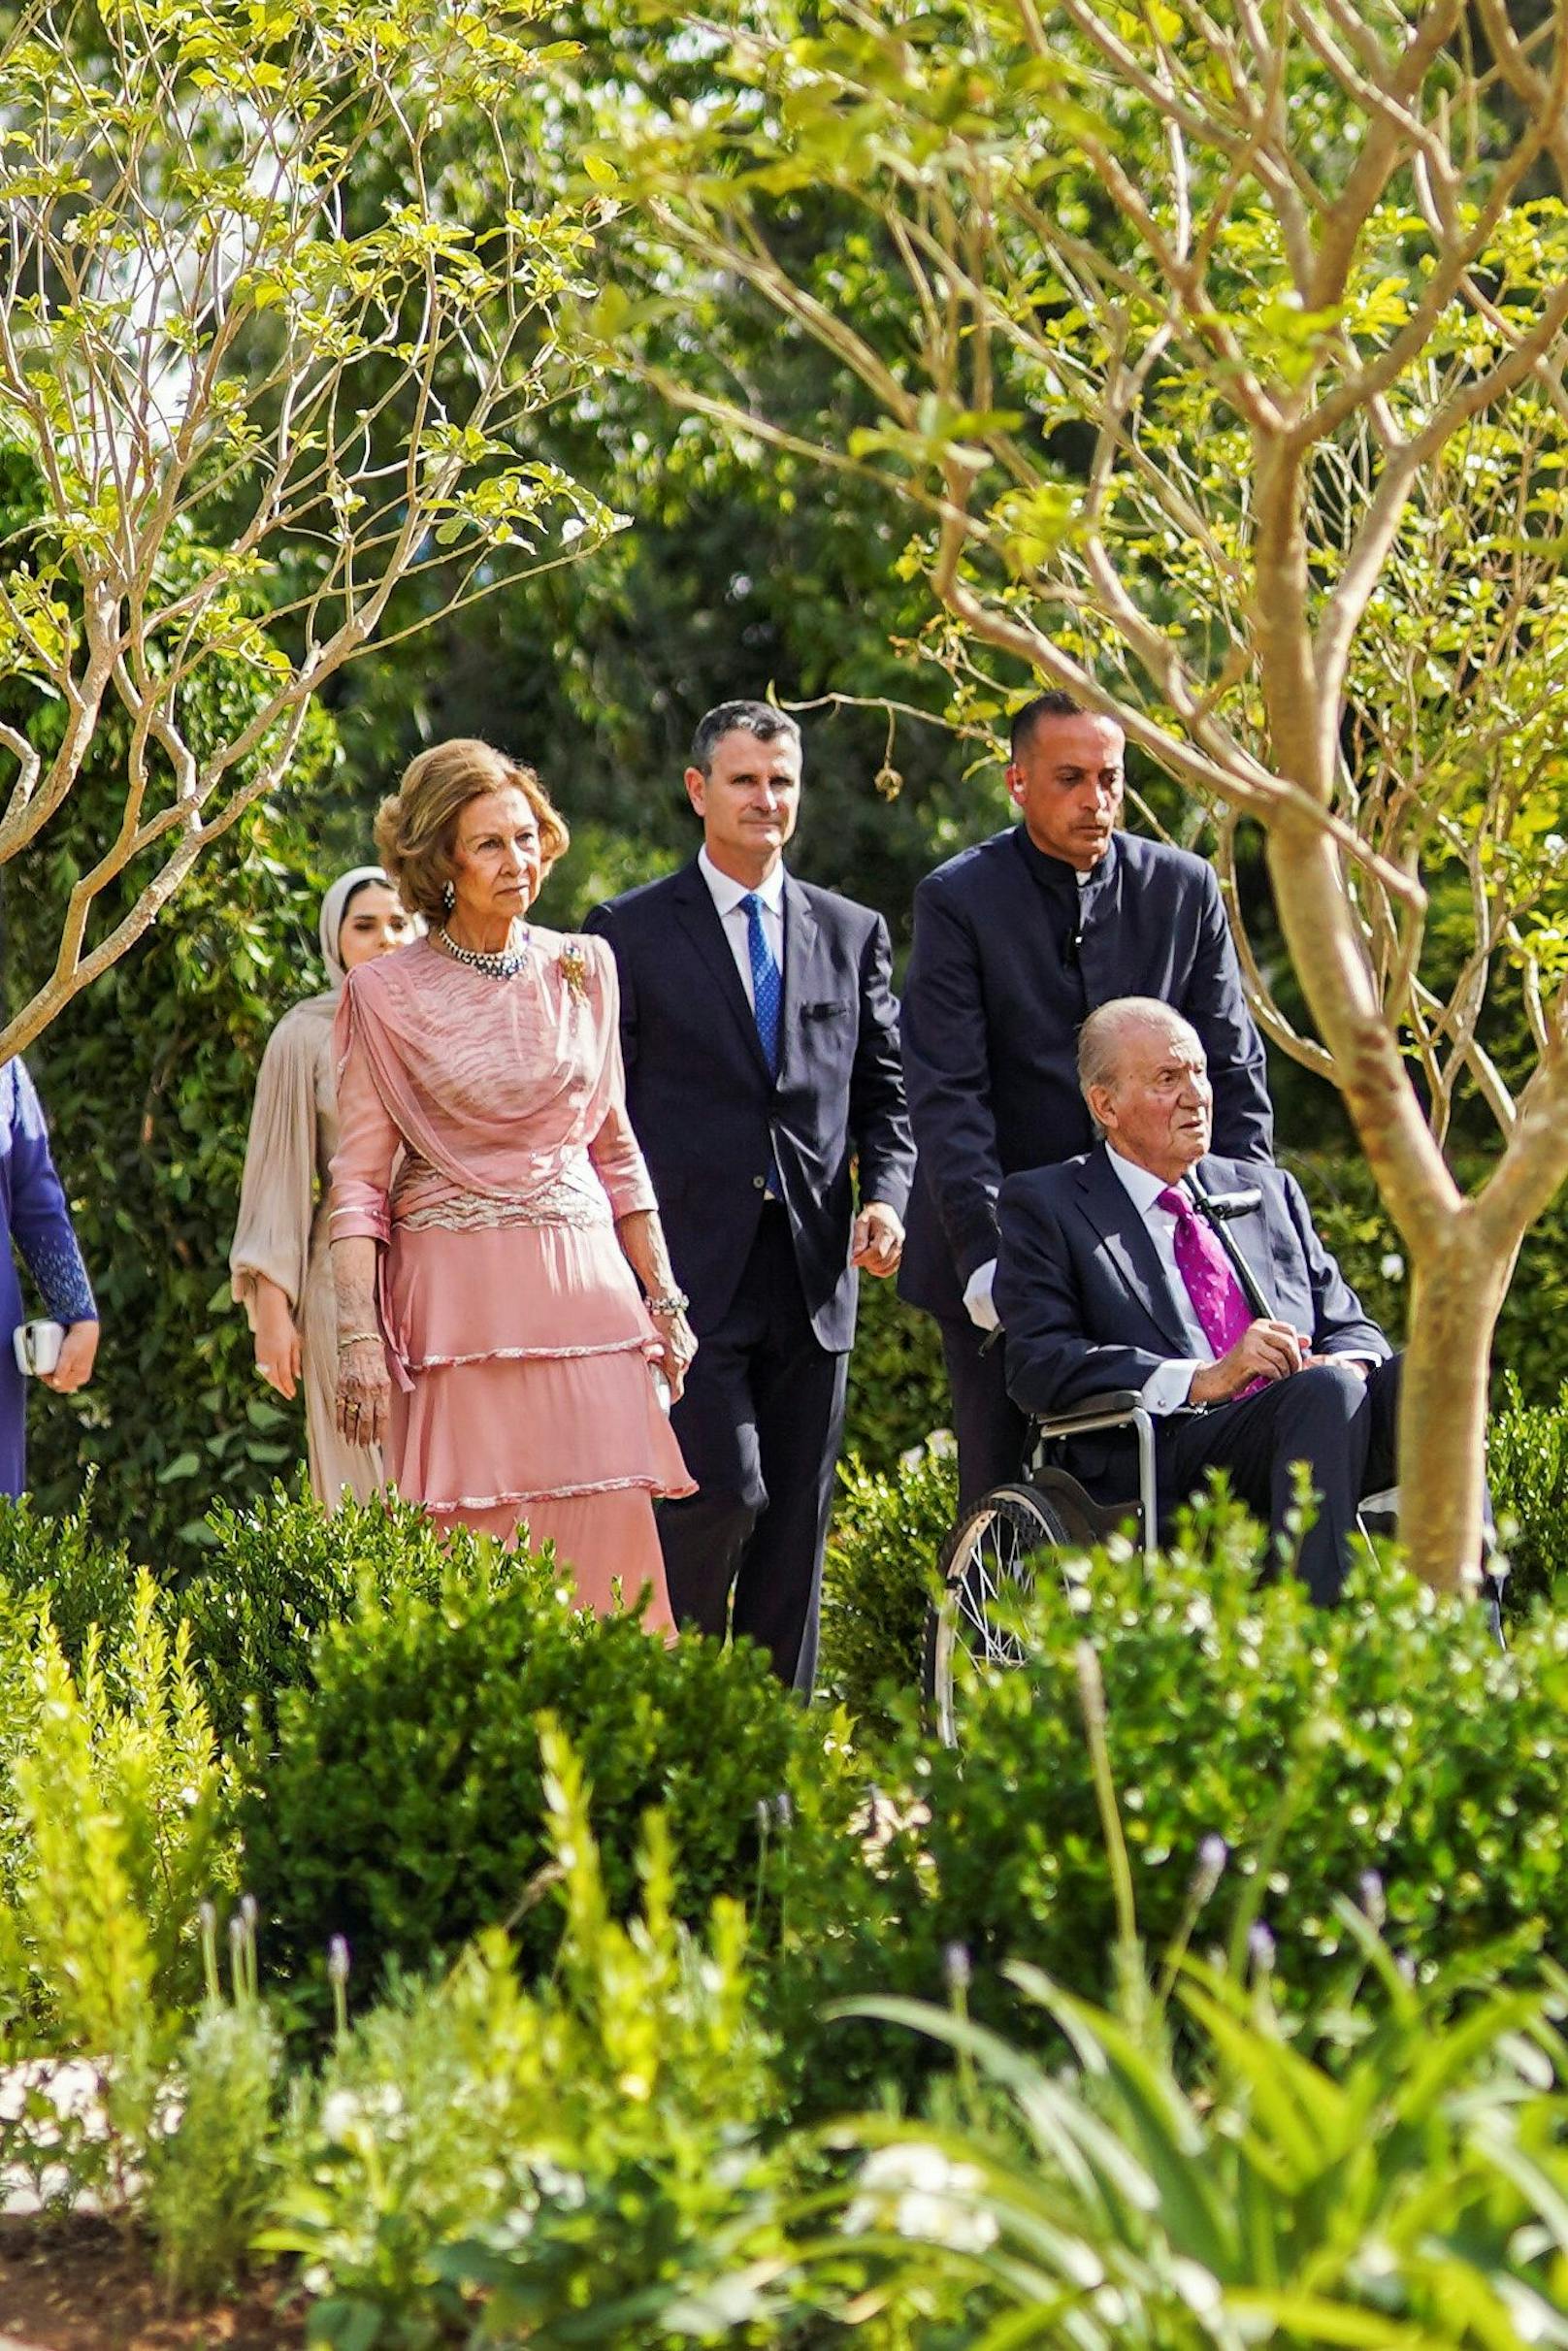 Spaniens ehemaliger König Juan Carlos ist mit seiner Ehefrau, Ex-Königin Sofía, und seiner Tochter Elena zur Hochzeit erschienen.